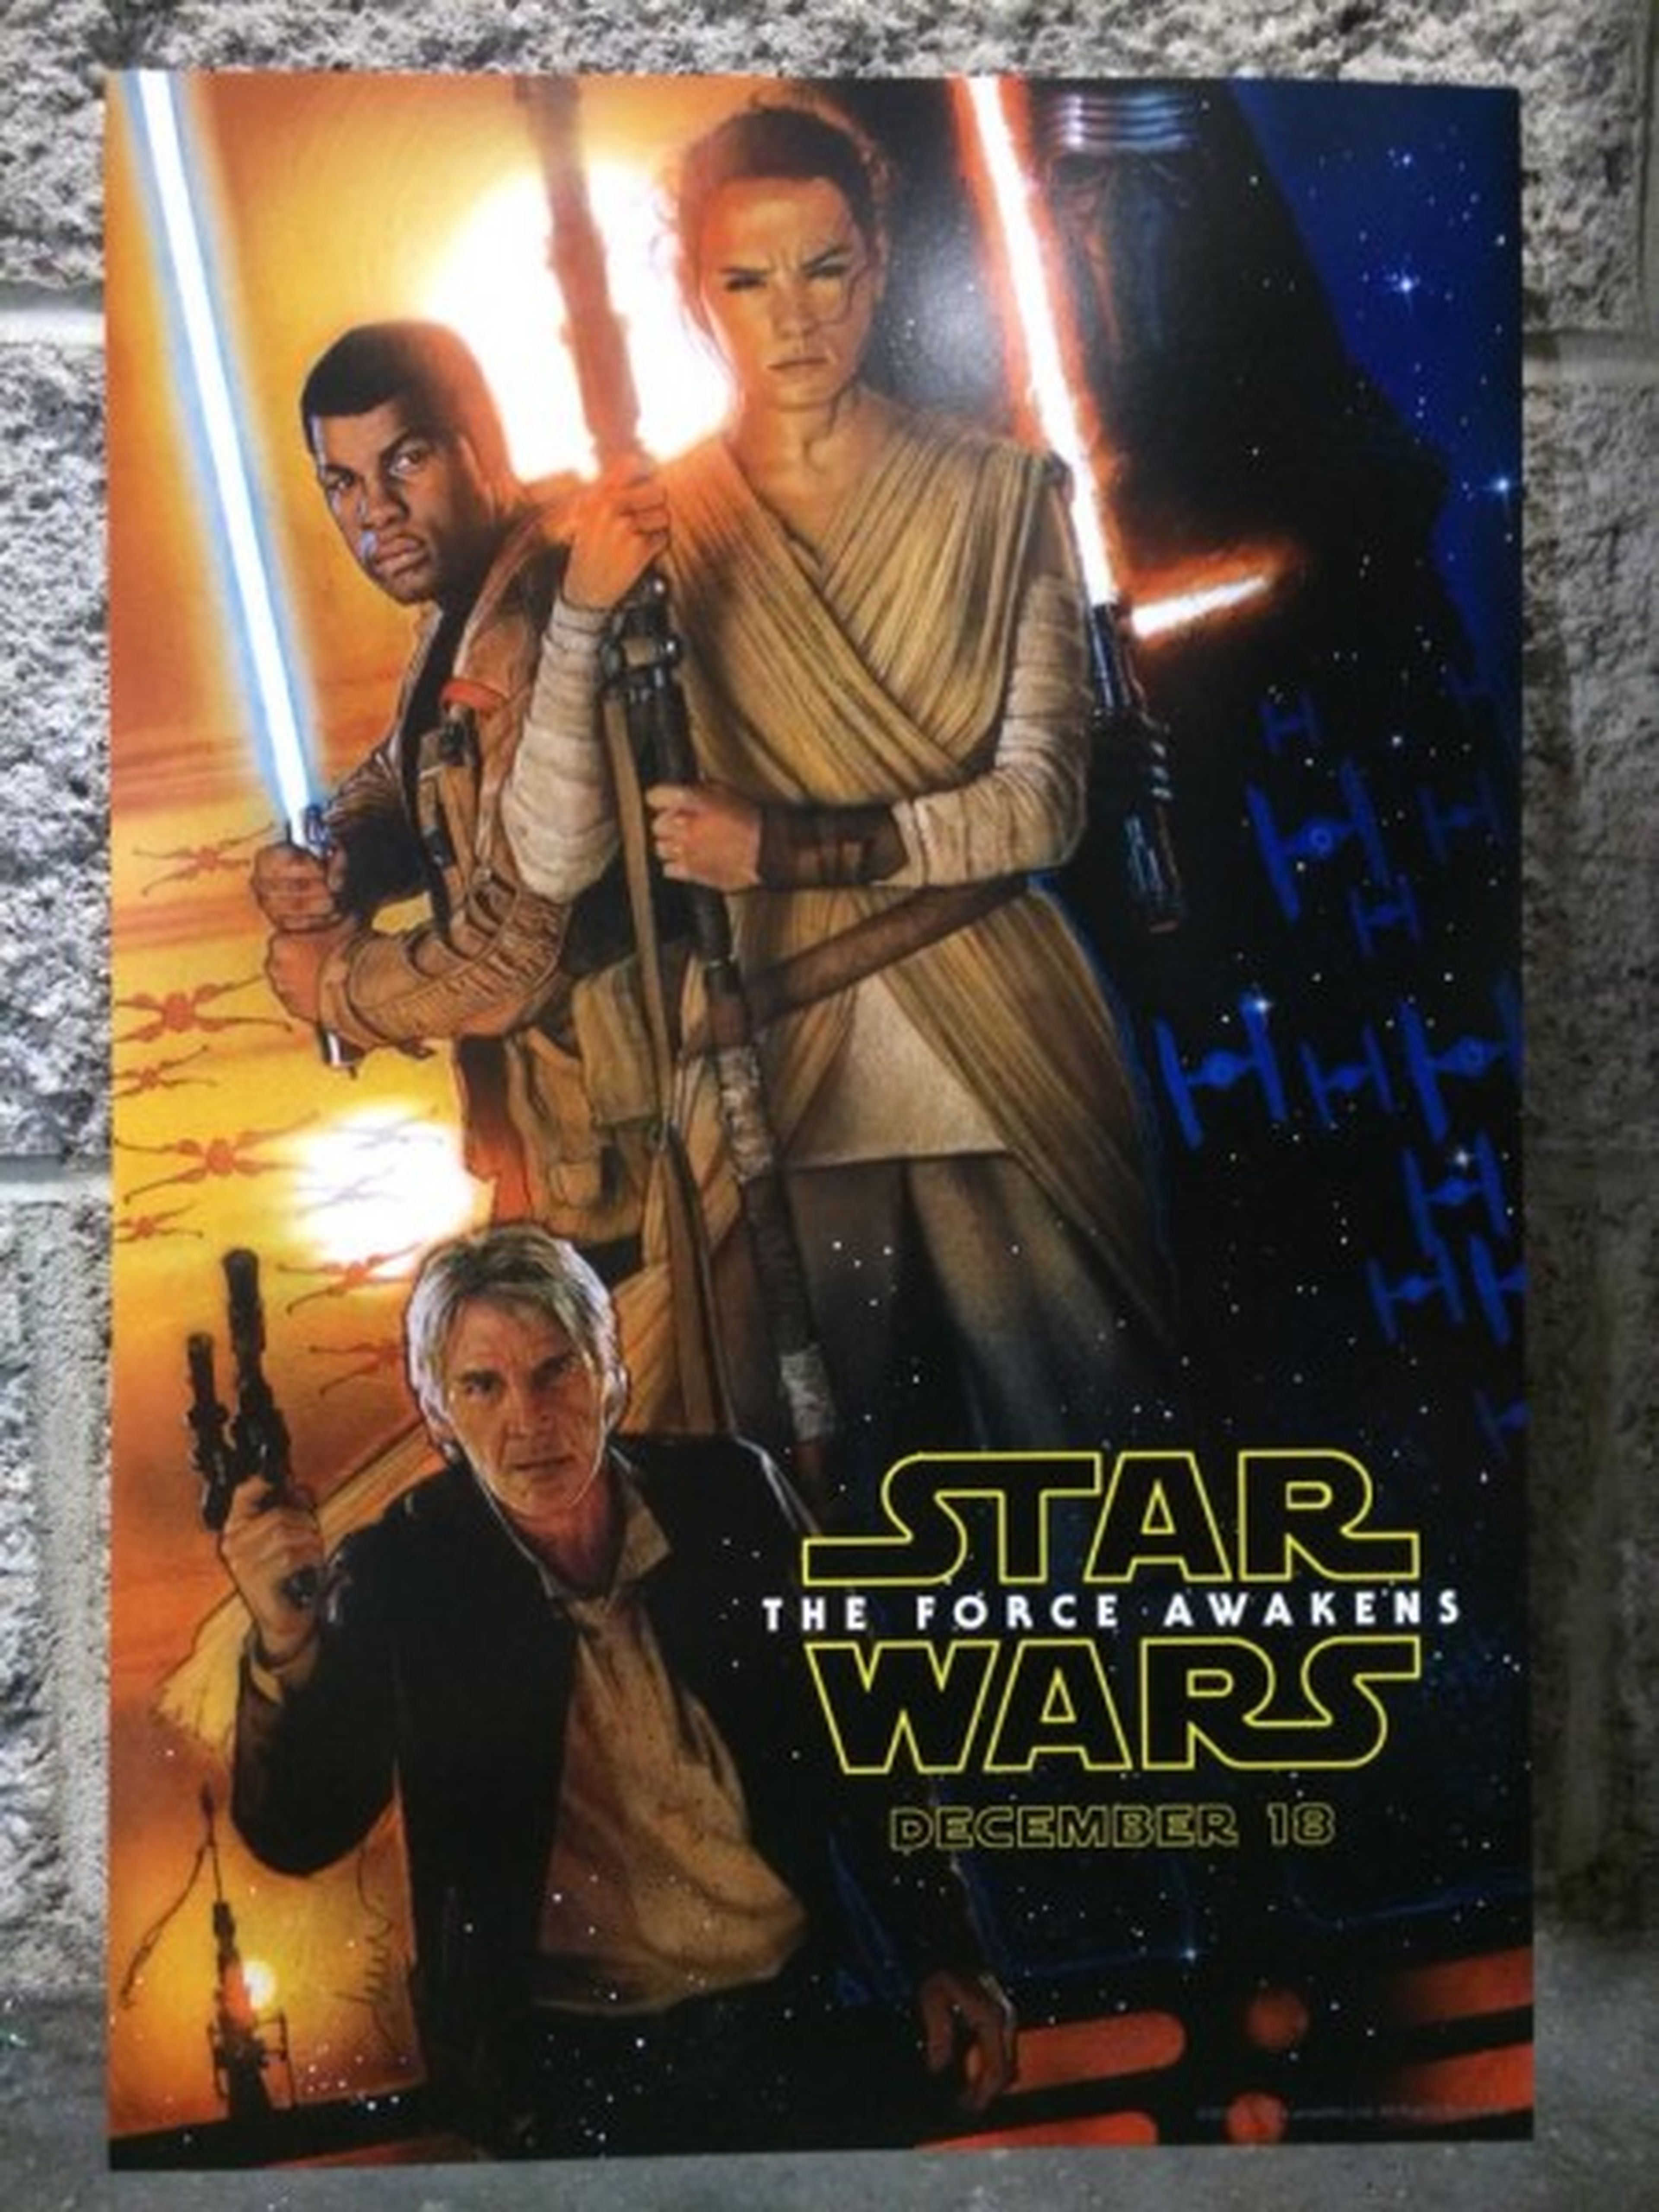 Star Wars Episodio VII: El despertar de la Fuerza - Poster oficial